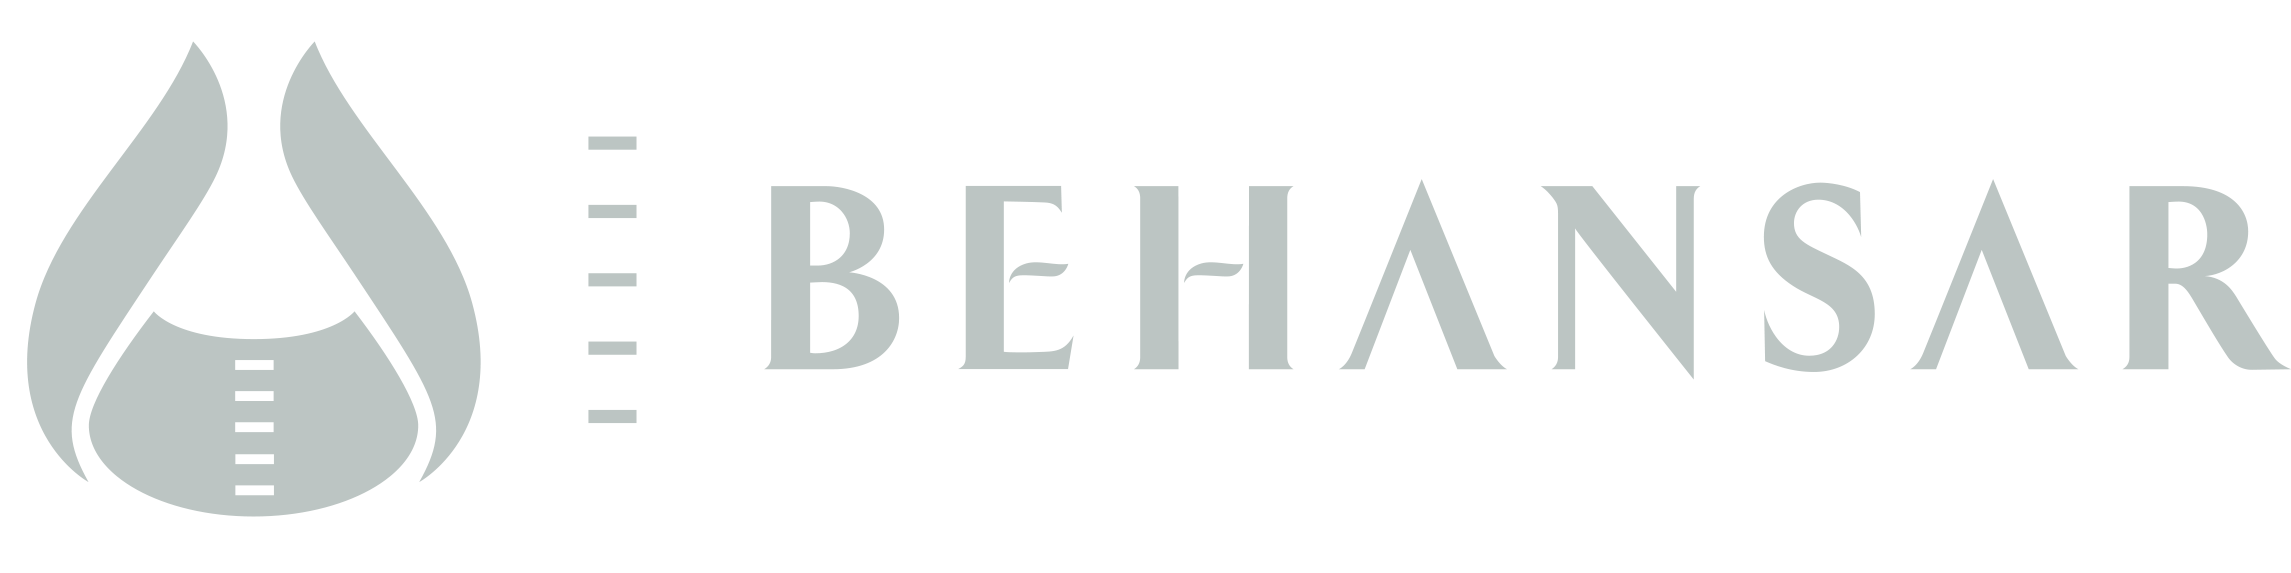 Behansar Co Logo Light